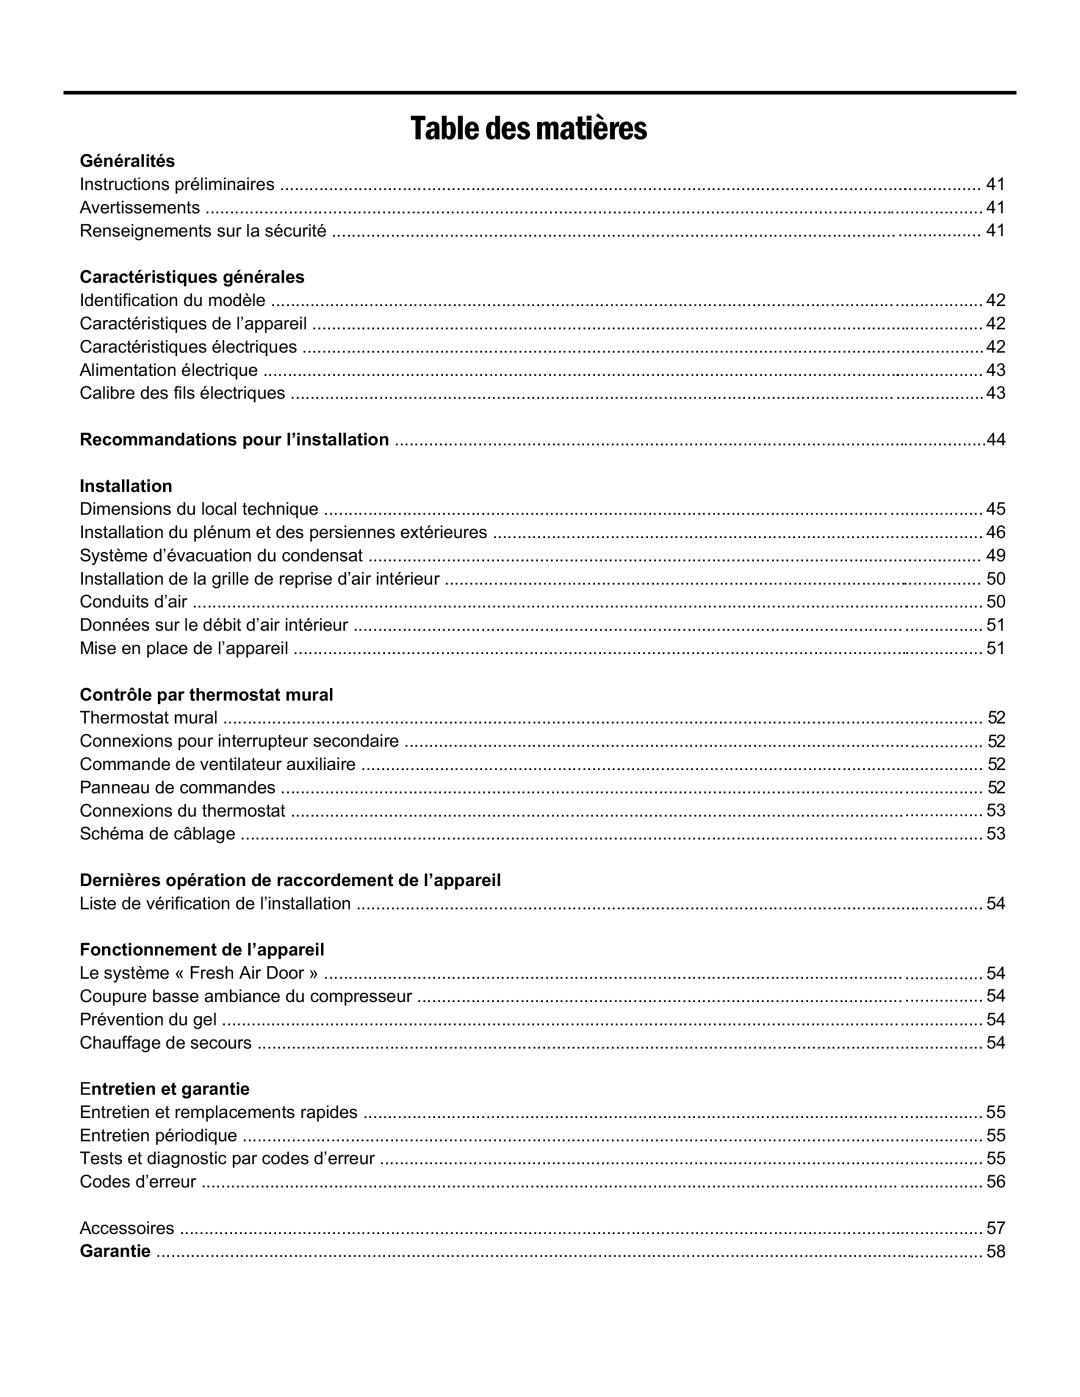 Friedrich 920-075-13 (1-11) operation manual Table Des Matières, Généralités, Caractéristiques générales, Installation 